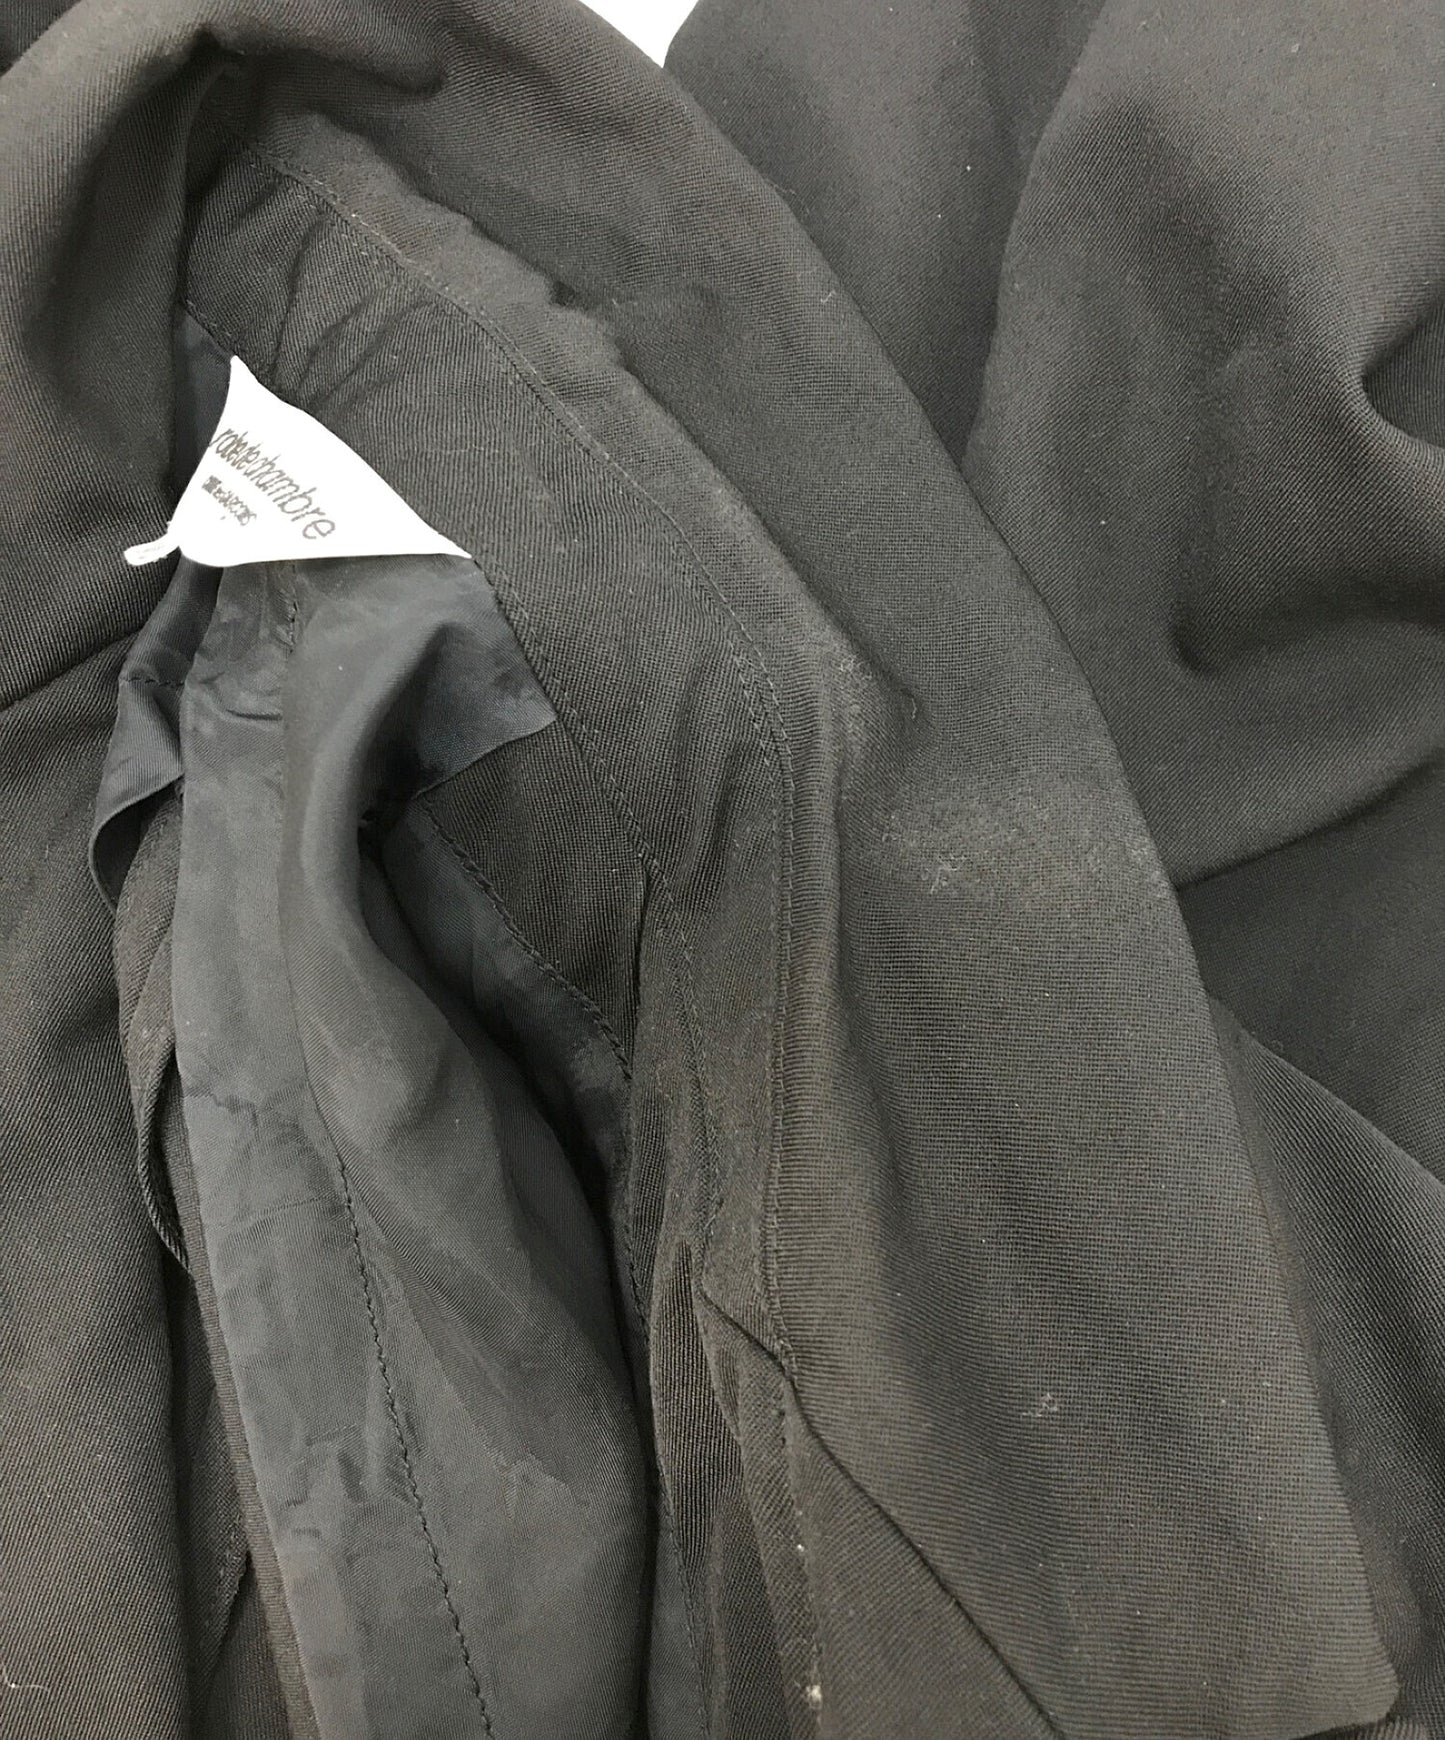 Robe de Chambre Comme des Garcons Jacket RM-J001